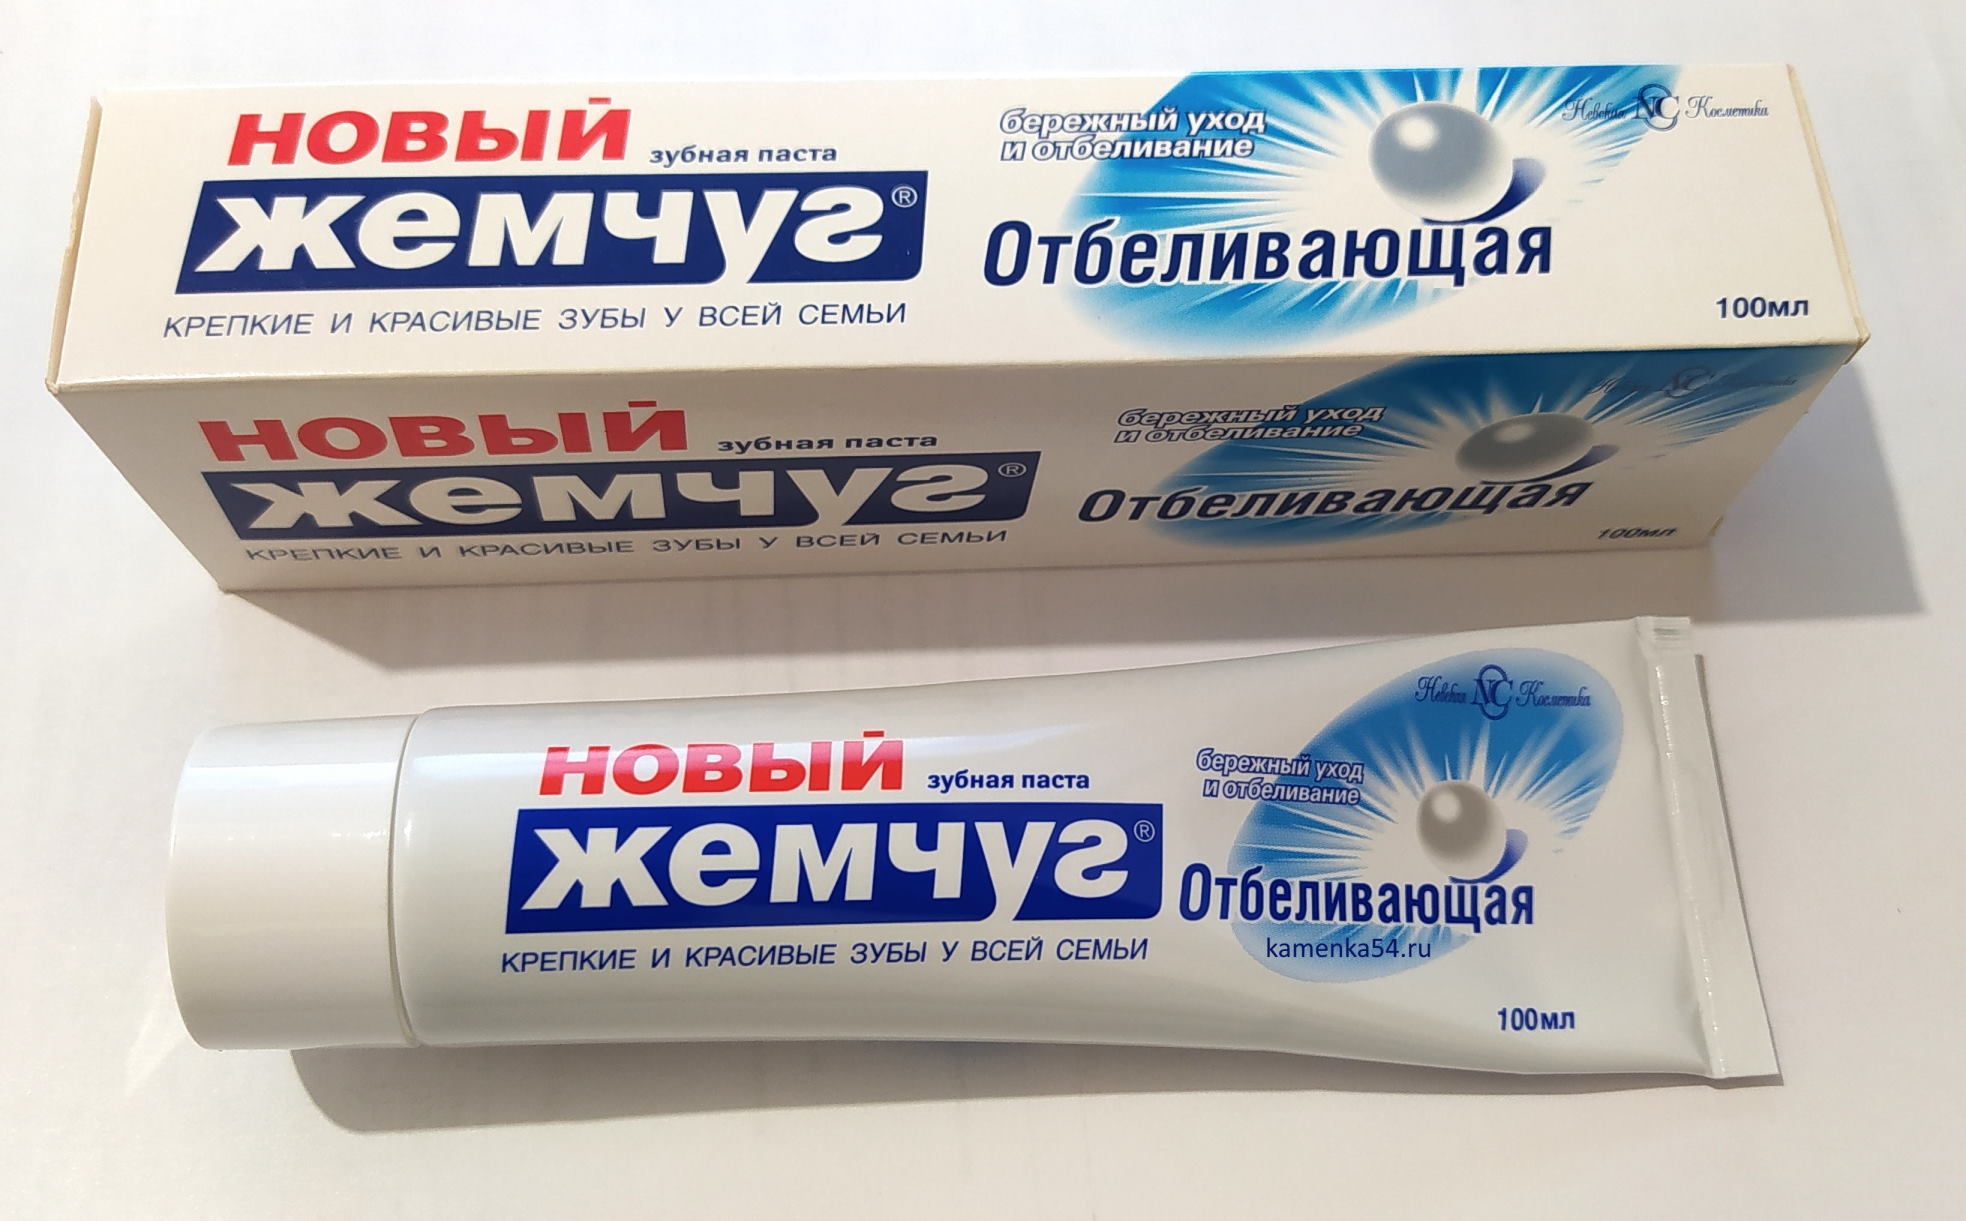 Зубная паста НОВЫЙ ЖЕМЧУГ "Отбеливающая", 100 мл